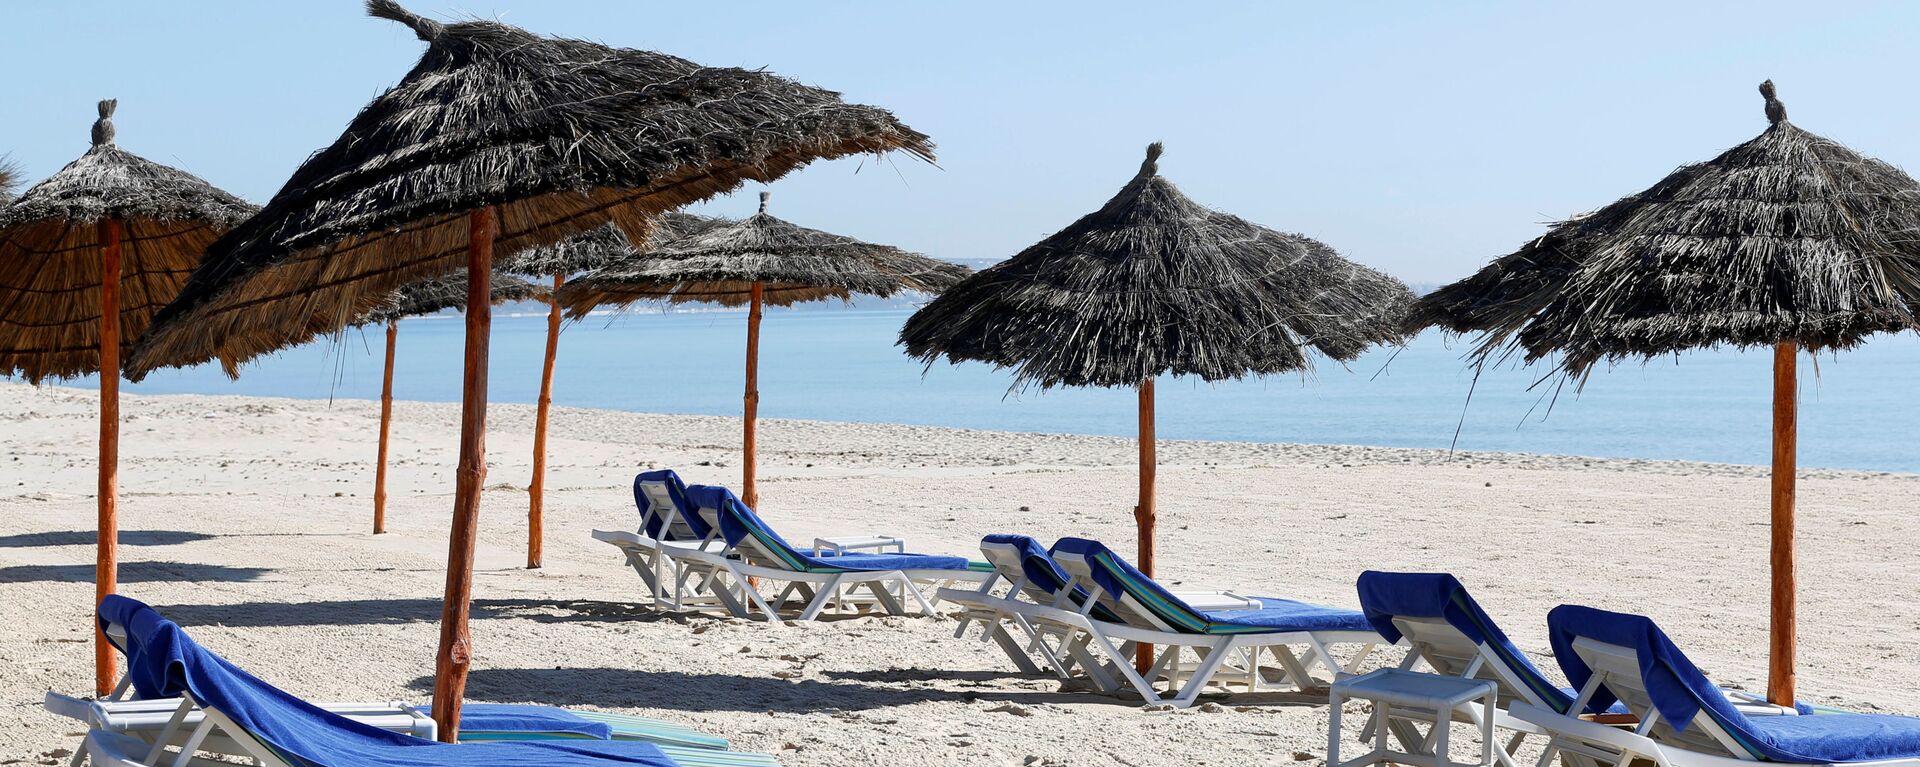 شاطئ خالي من السياح بالقرب من فندق هاسدرابل في مدينة الحمامات، تونس 12 مارس / آذار 2020 - سبوتنيك عربي, 1920, 18.04.2021